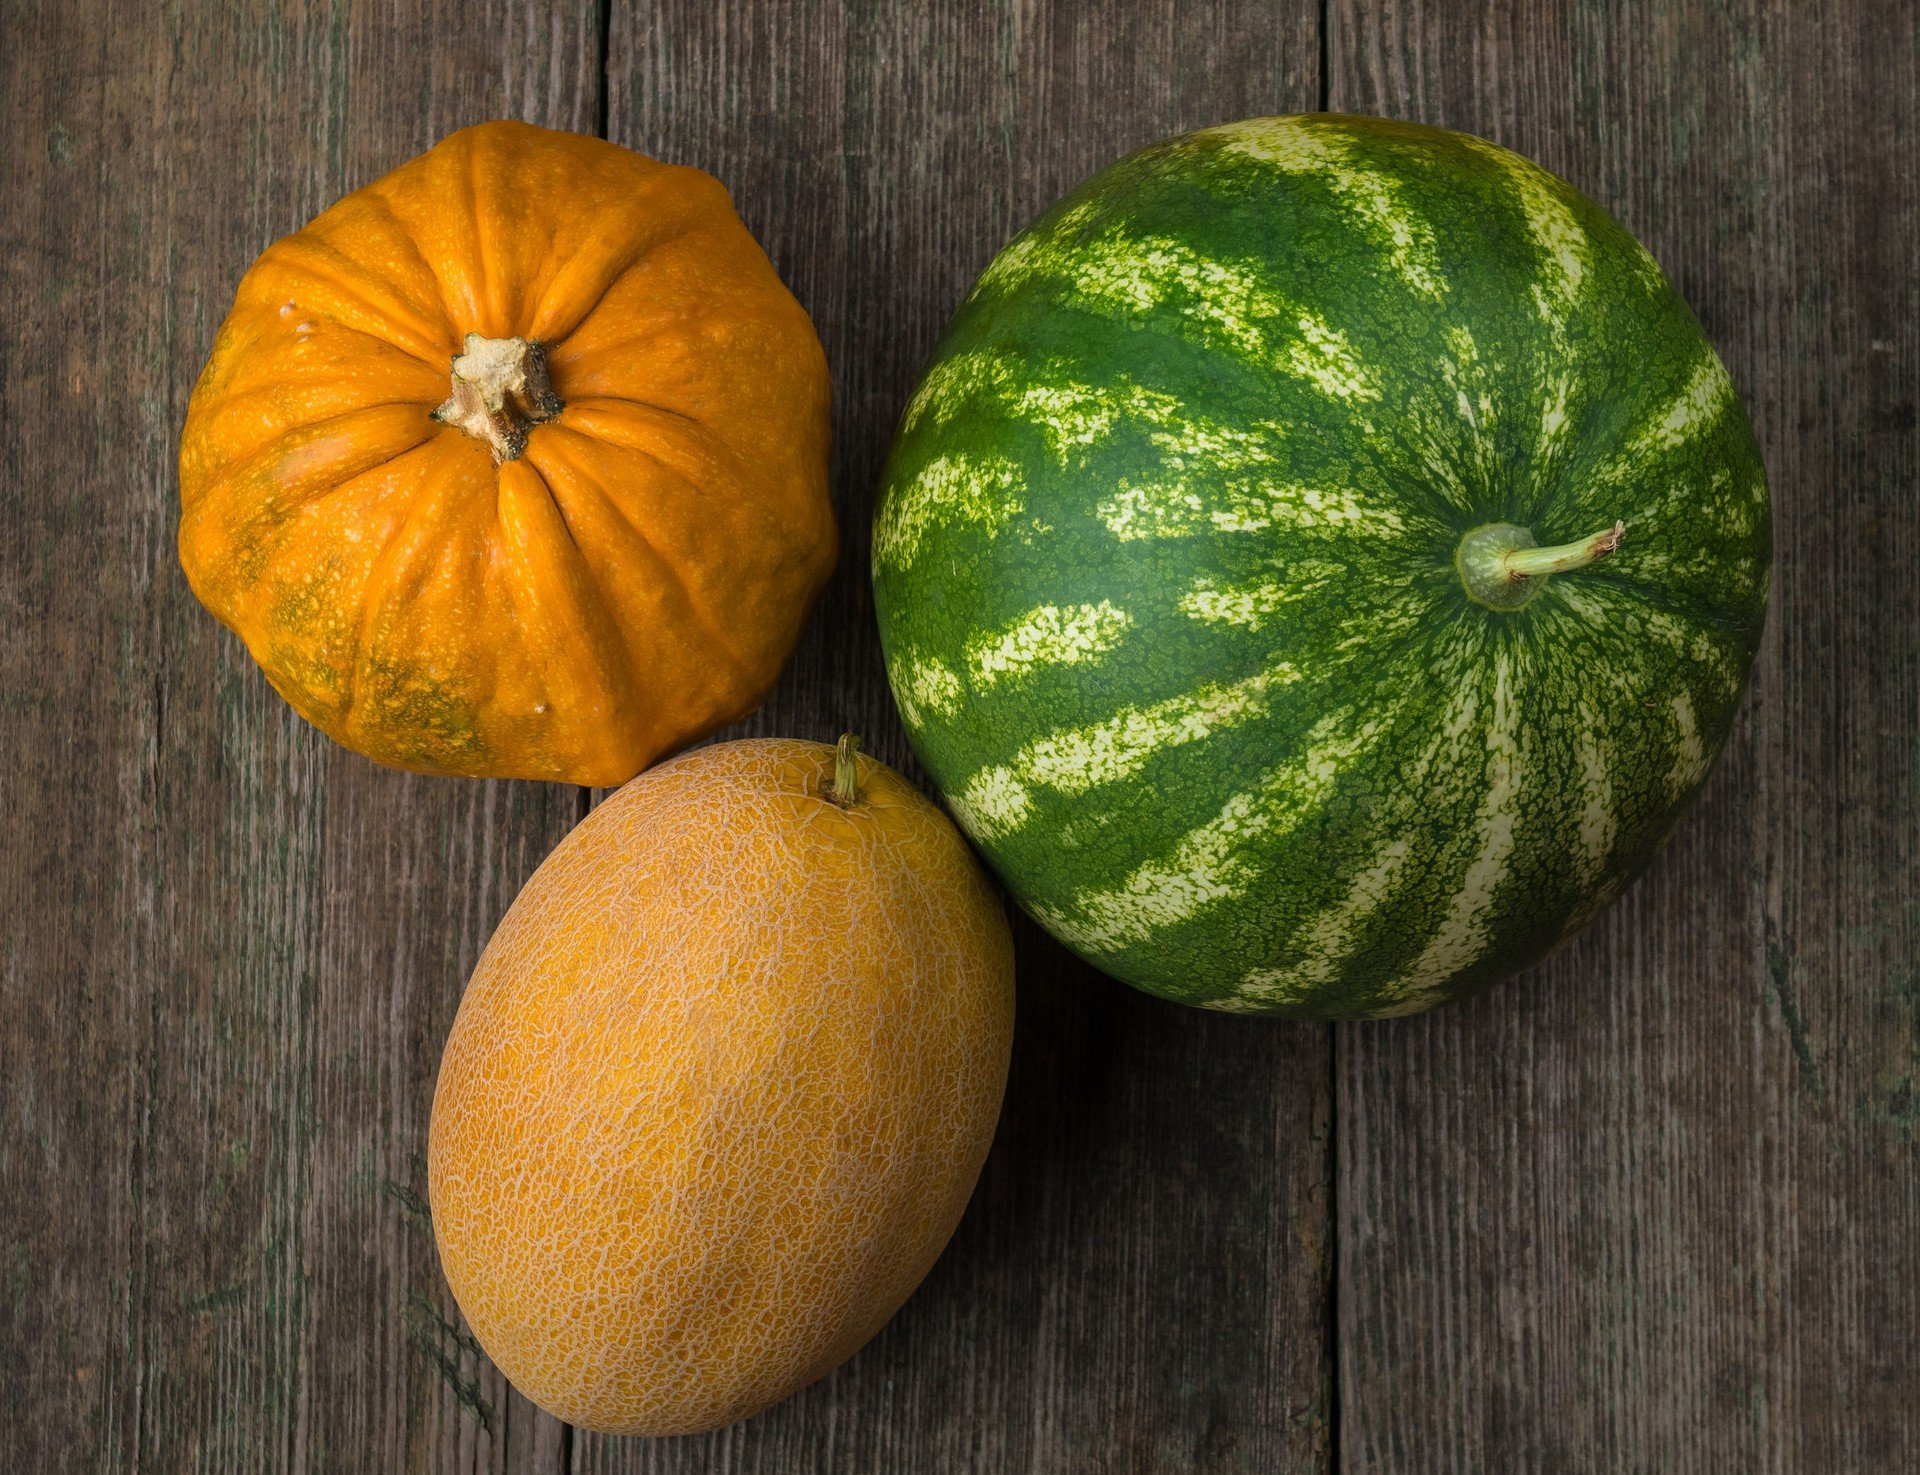 Dynia I Arbuz Ważą Razem 8 Kg Dynia, arbuz i melon – poznaj zdrowotne właściwości roślin dyniowatych